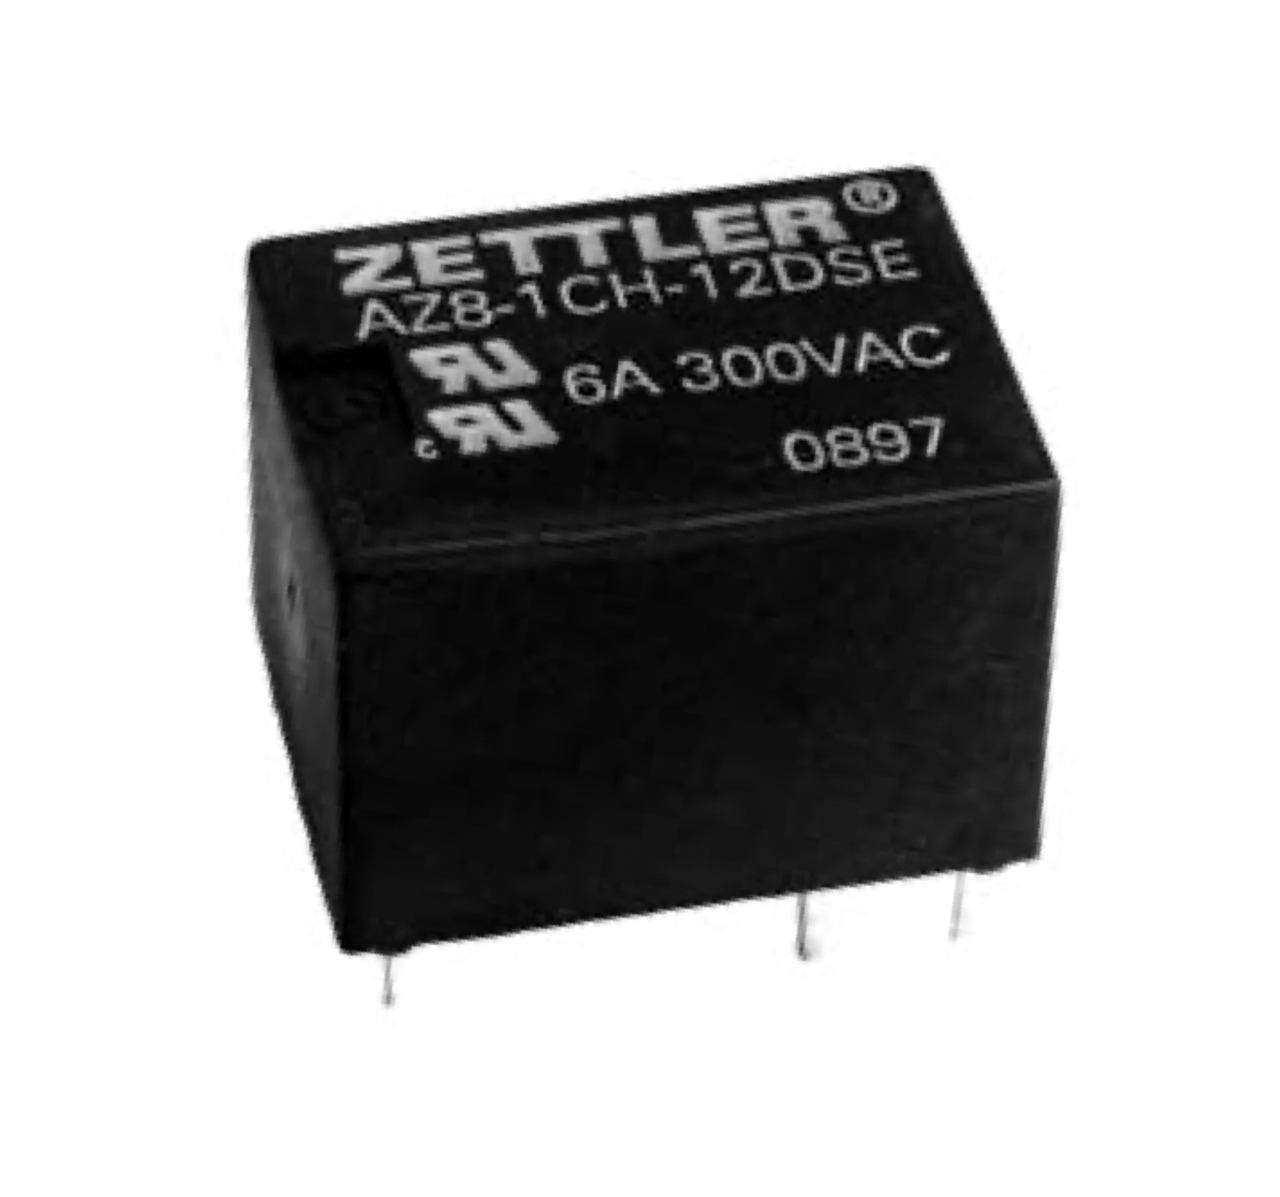 American Zettler AZ8-1CH-48DS Power Relay